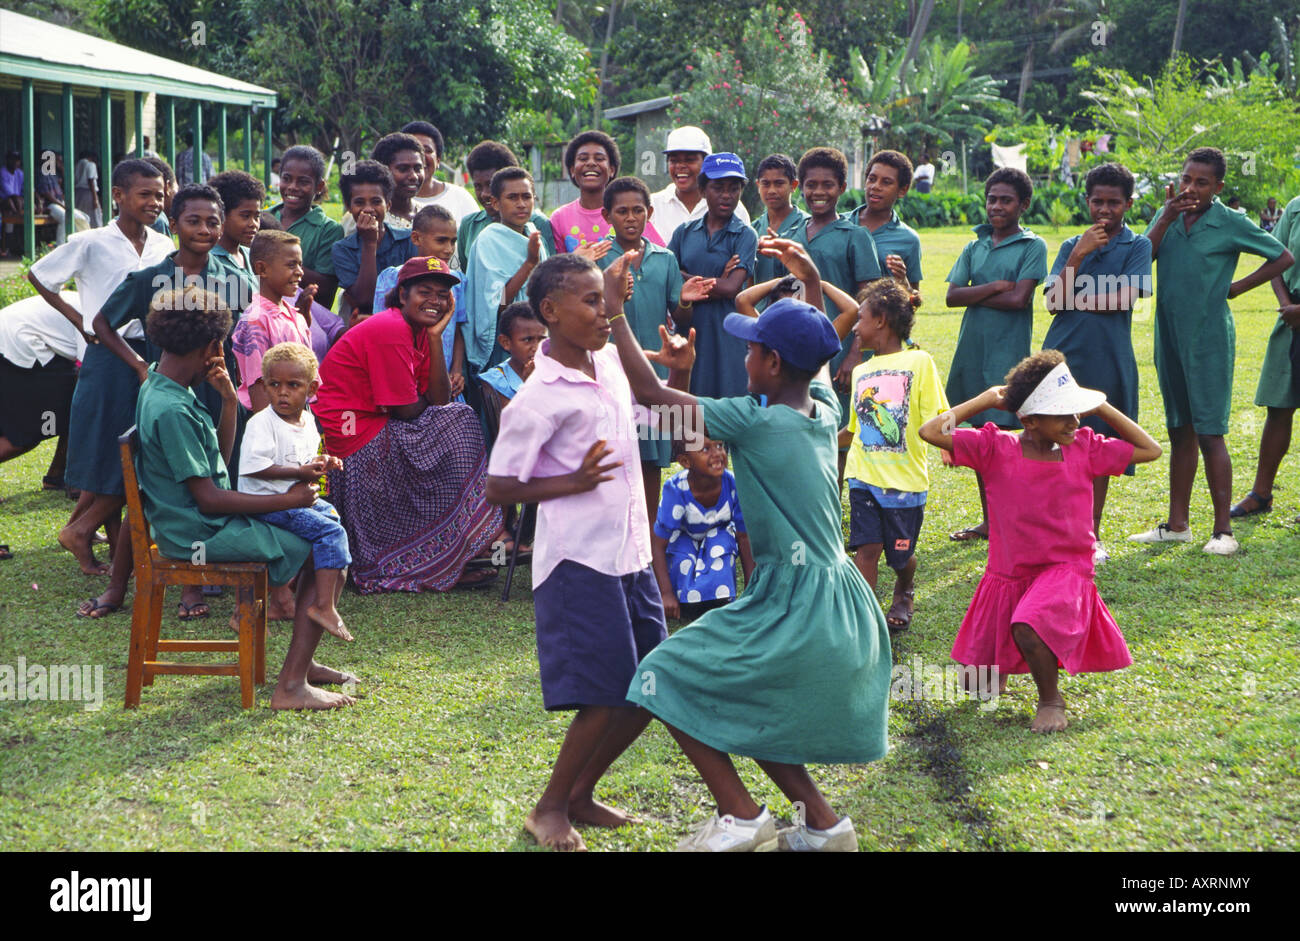 South Pacific Fiji Vitu Levu school class, kids dancing and singing outdoors Stock Photo